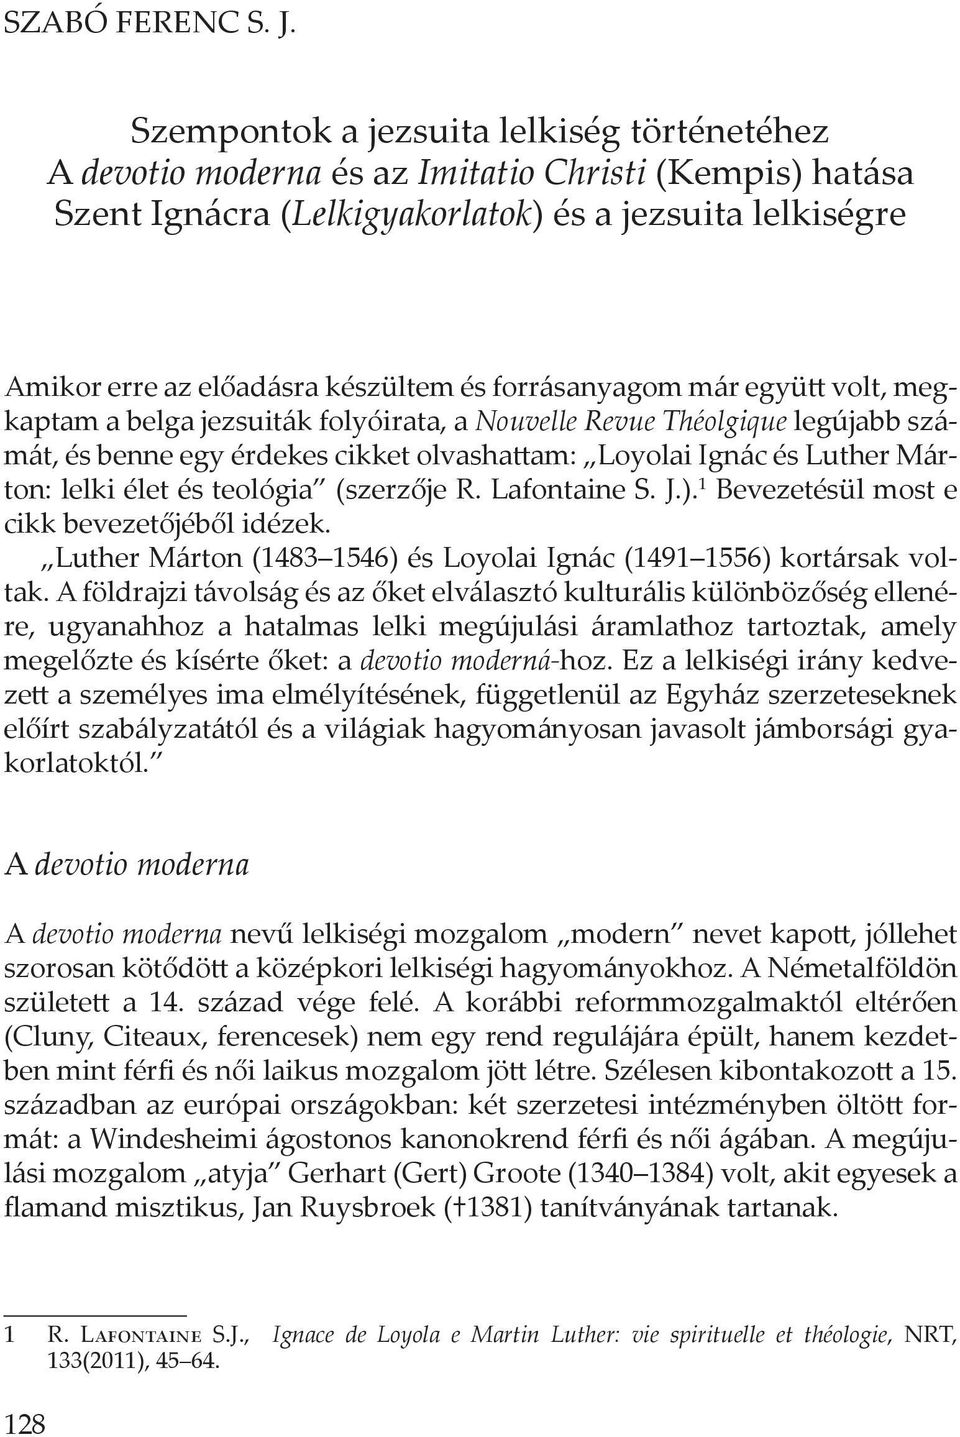 forrásanyagom már együtt volt, megkaptam a belga jezsuiták folyóirata, a Nouvelle Revue Théolgique legújabb számát, és benne egy érdekes cikket olvashattam: Loyolai Ignác és Luther Márton: lelki élet